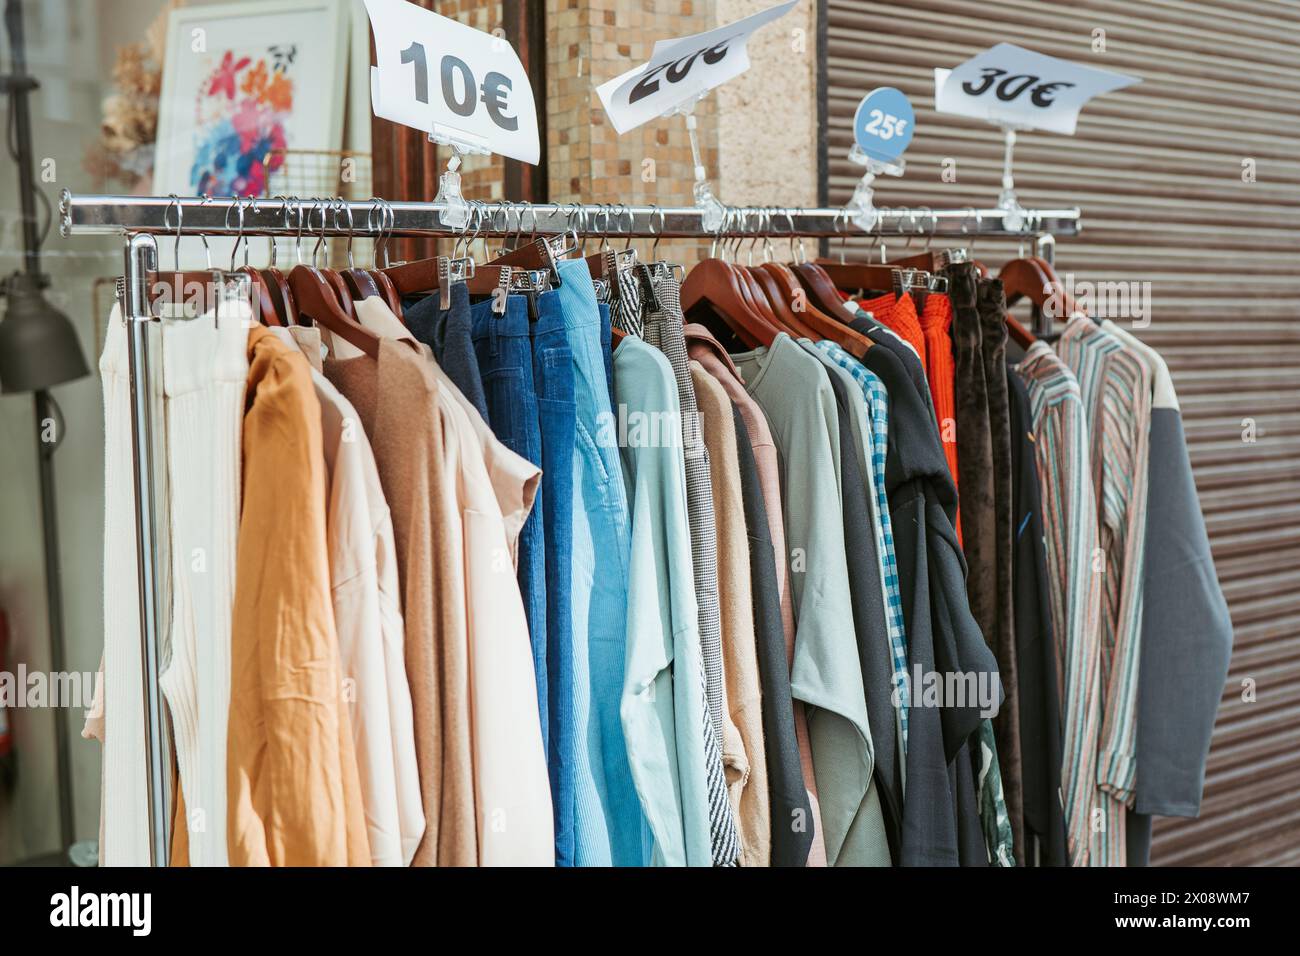 Kleidungsstücke mit Preisschildern, die auf großartige Angebote hinweisen, hängen in einem Boutique-Geschäft an der Schiene und laden so preisbewusste Modeliebhaber ein Stockfoto